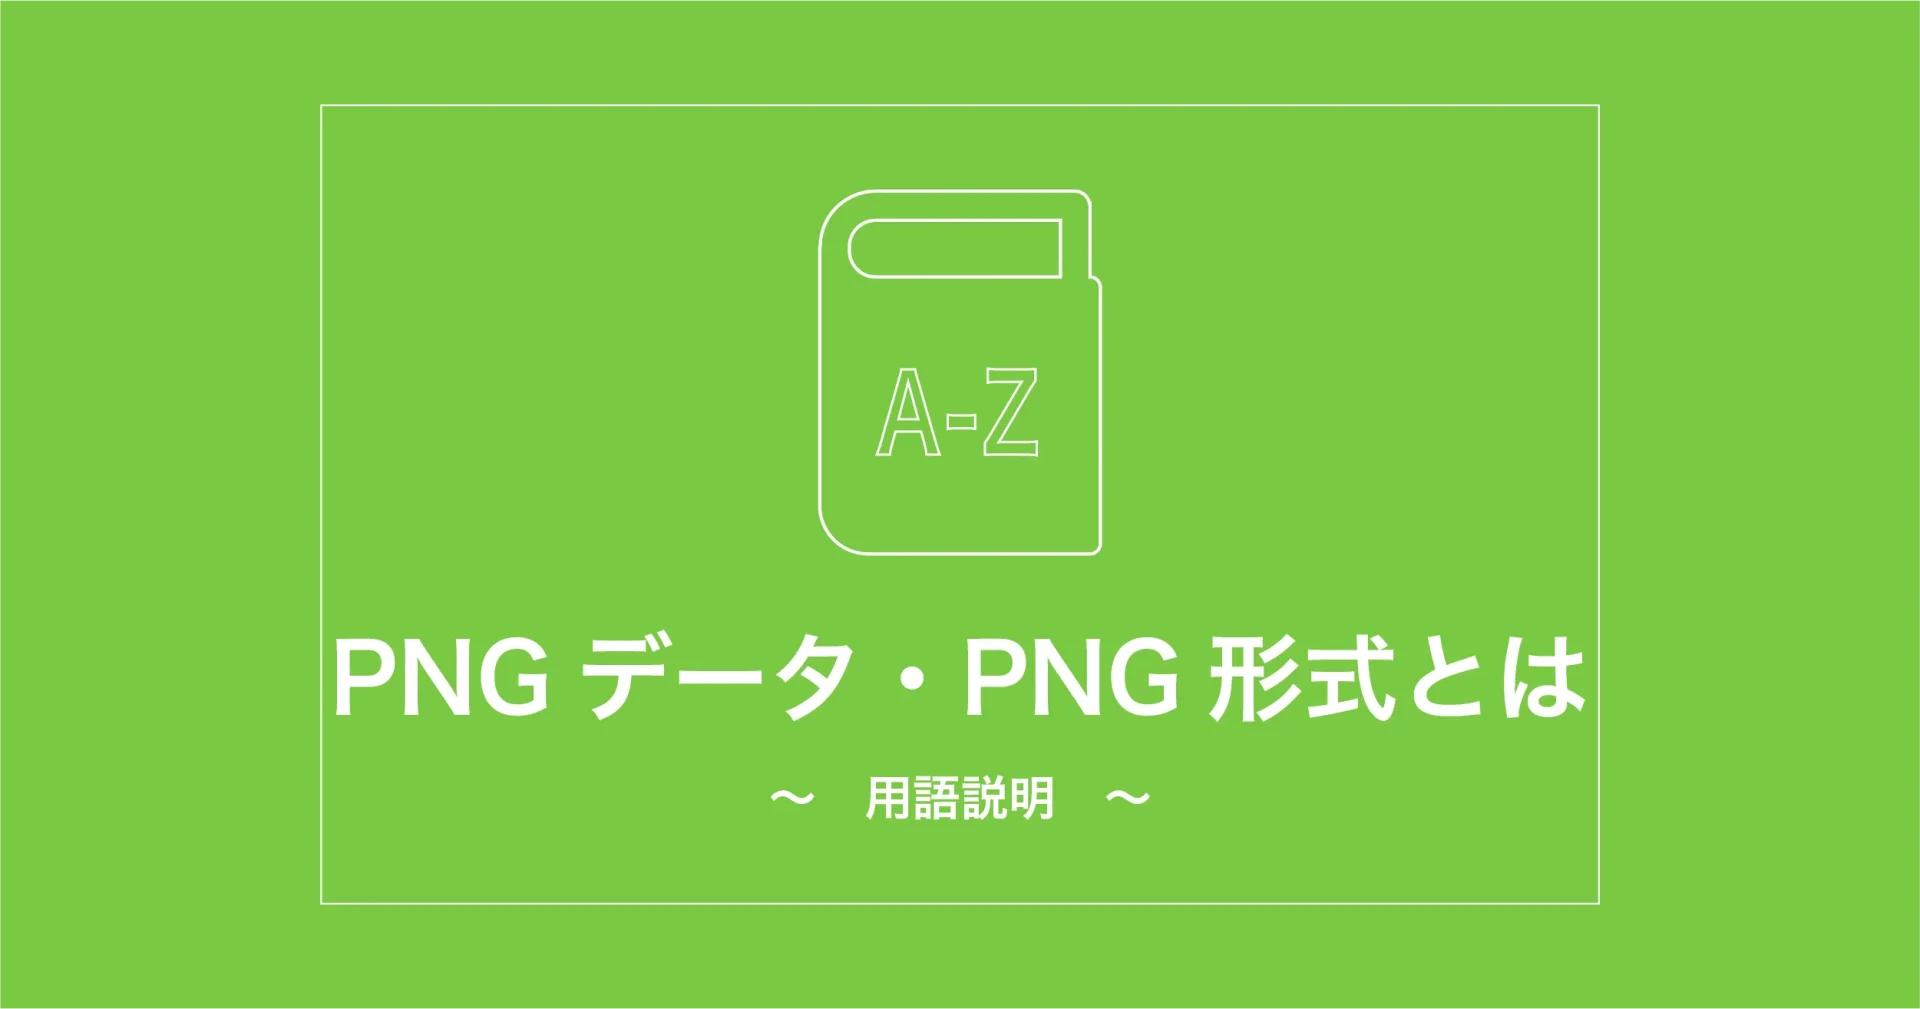 PNGデータ・PNG形式とは